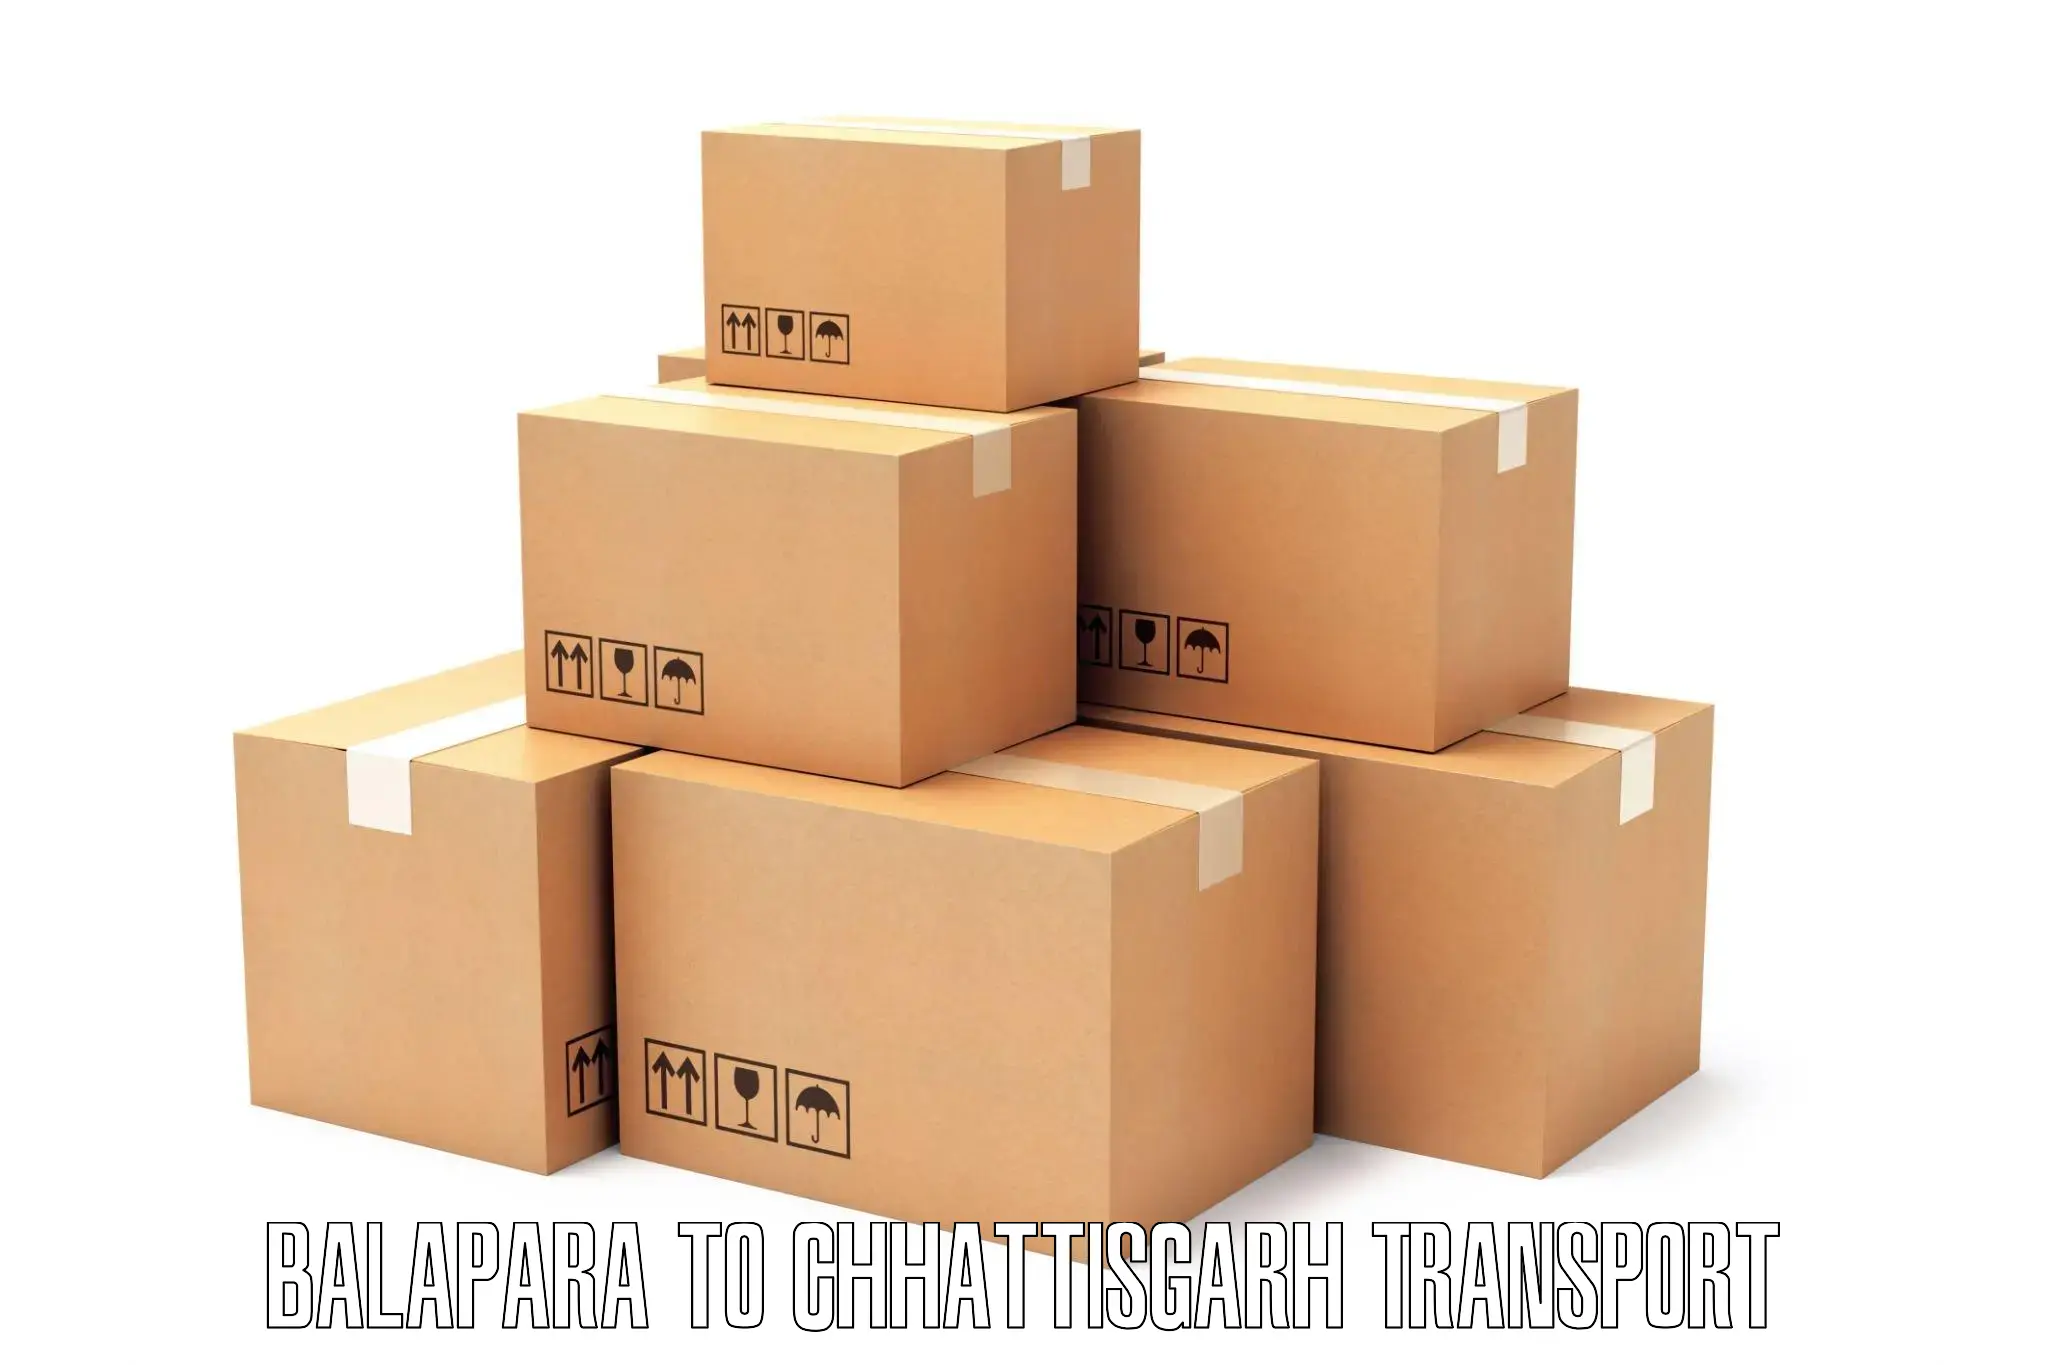 Furniture transport service Balapara to Raipur